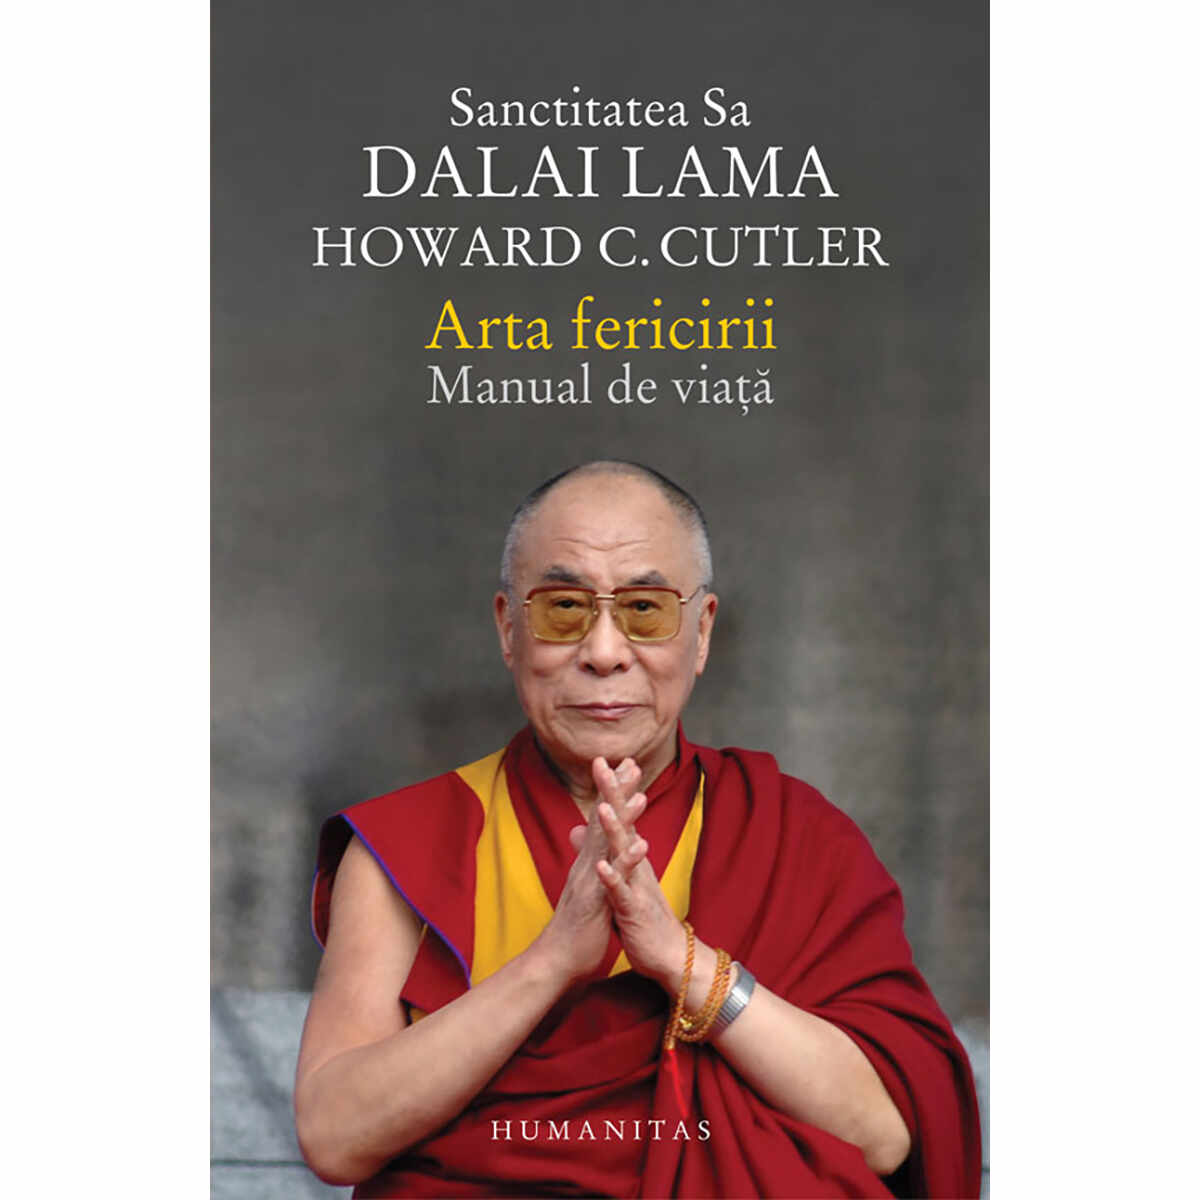 Arta fericirii. Manual de viata, Dalai Lama